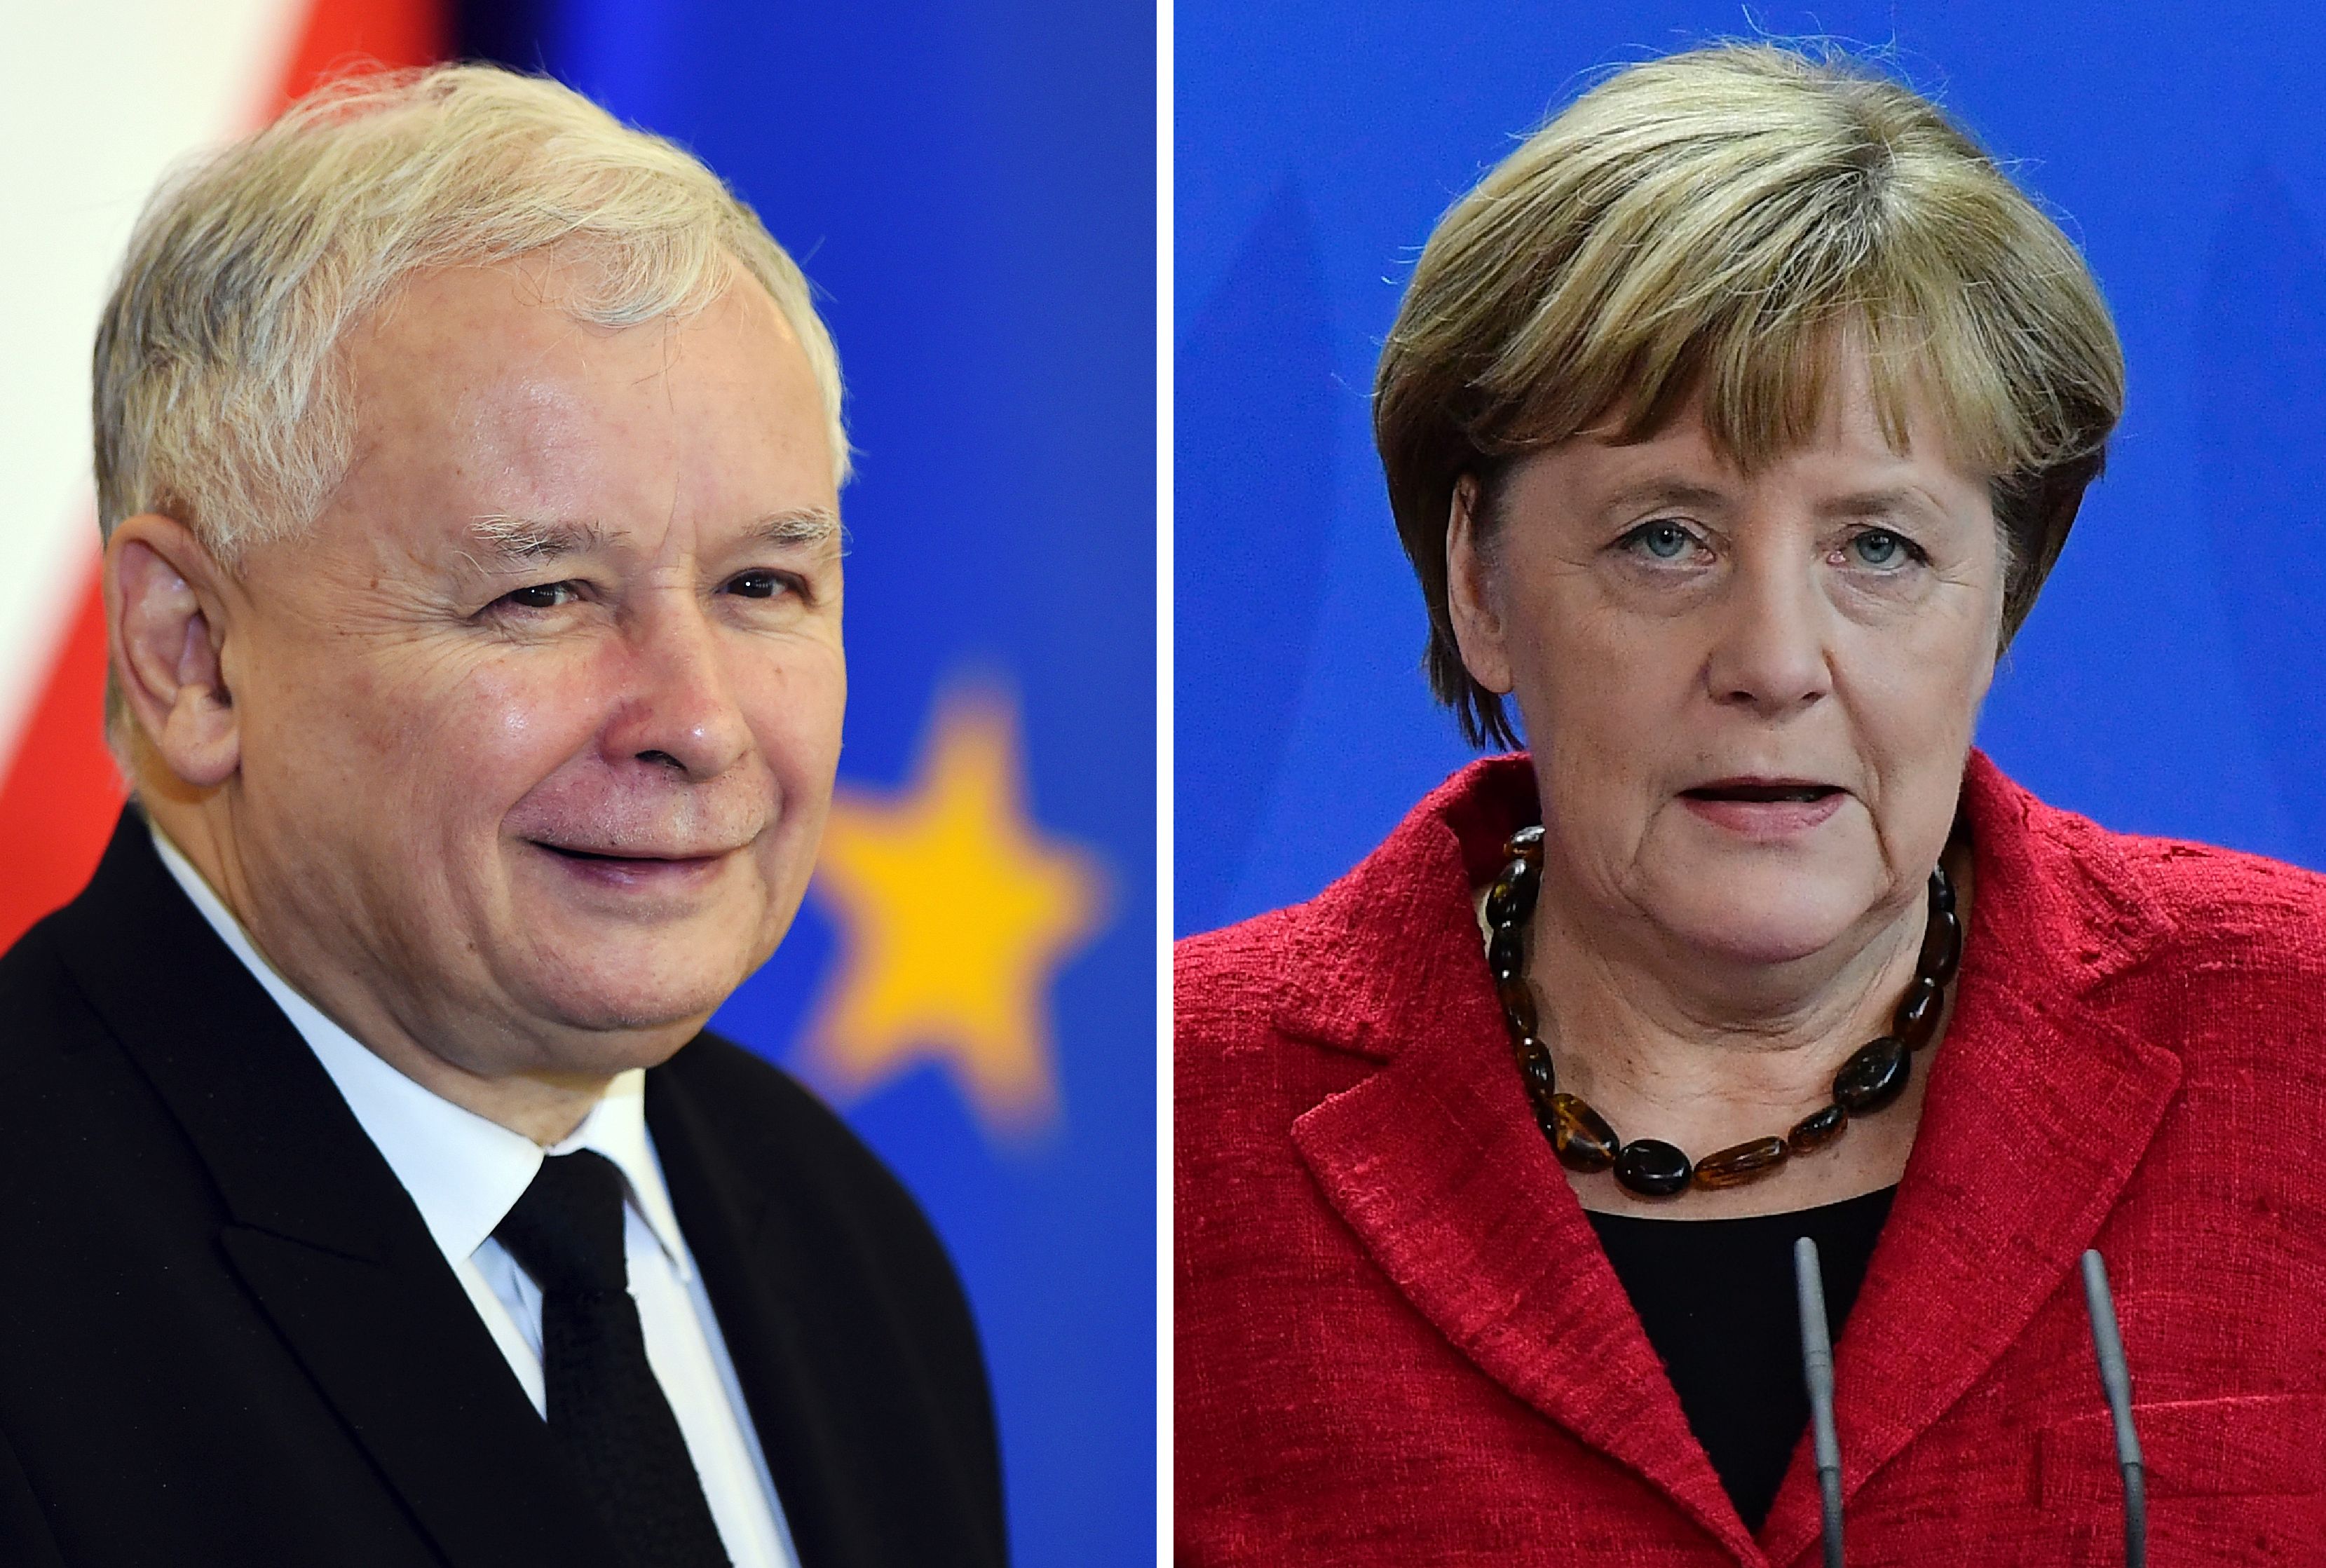 Polen: Kanzlerin Merkel pocht auf Rechtsstaatlichkeit – Kaczynski begrüßt die Idee einer atomaren „Supermacht“ Europa